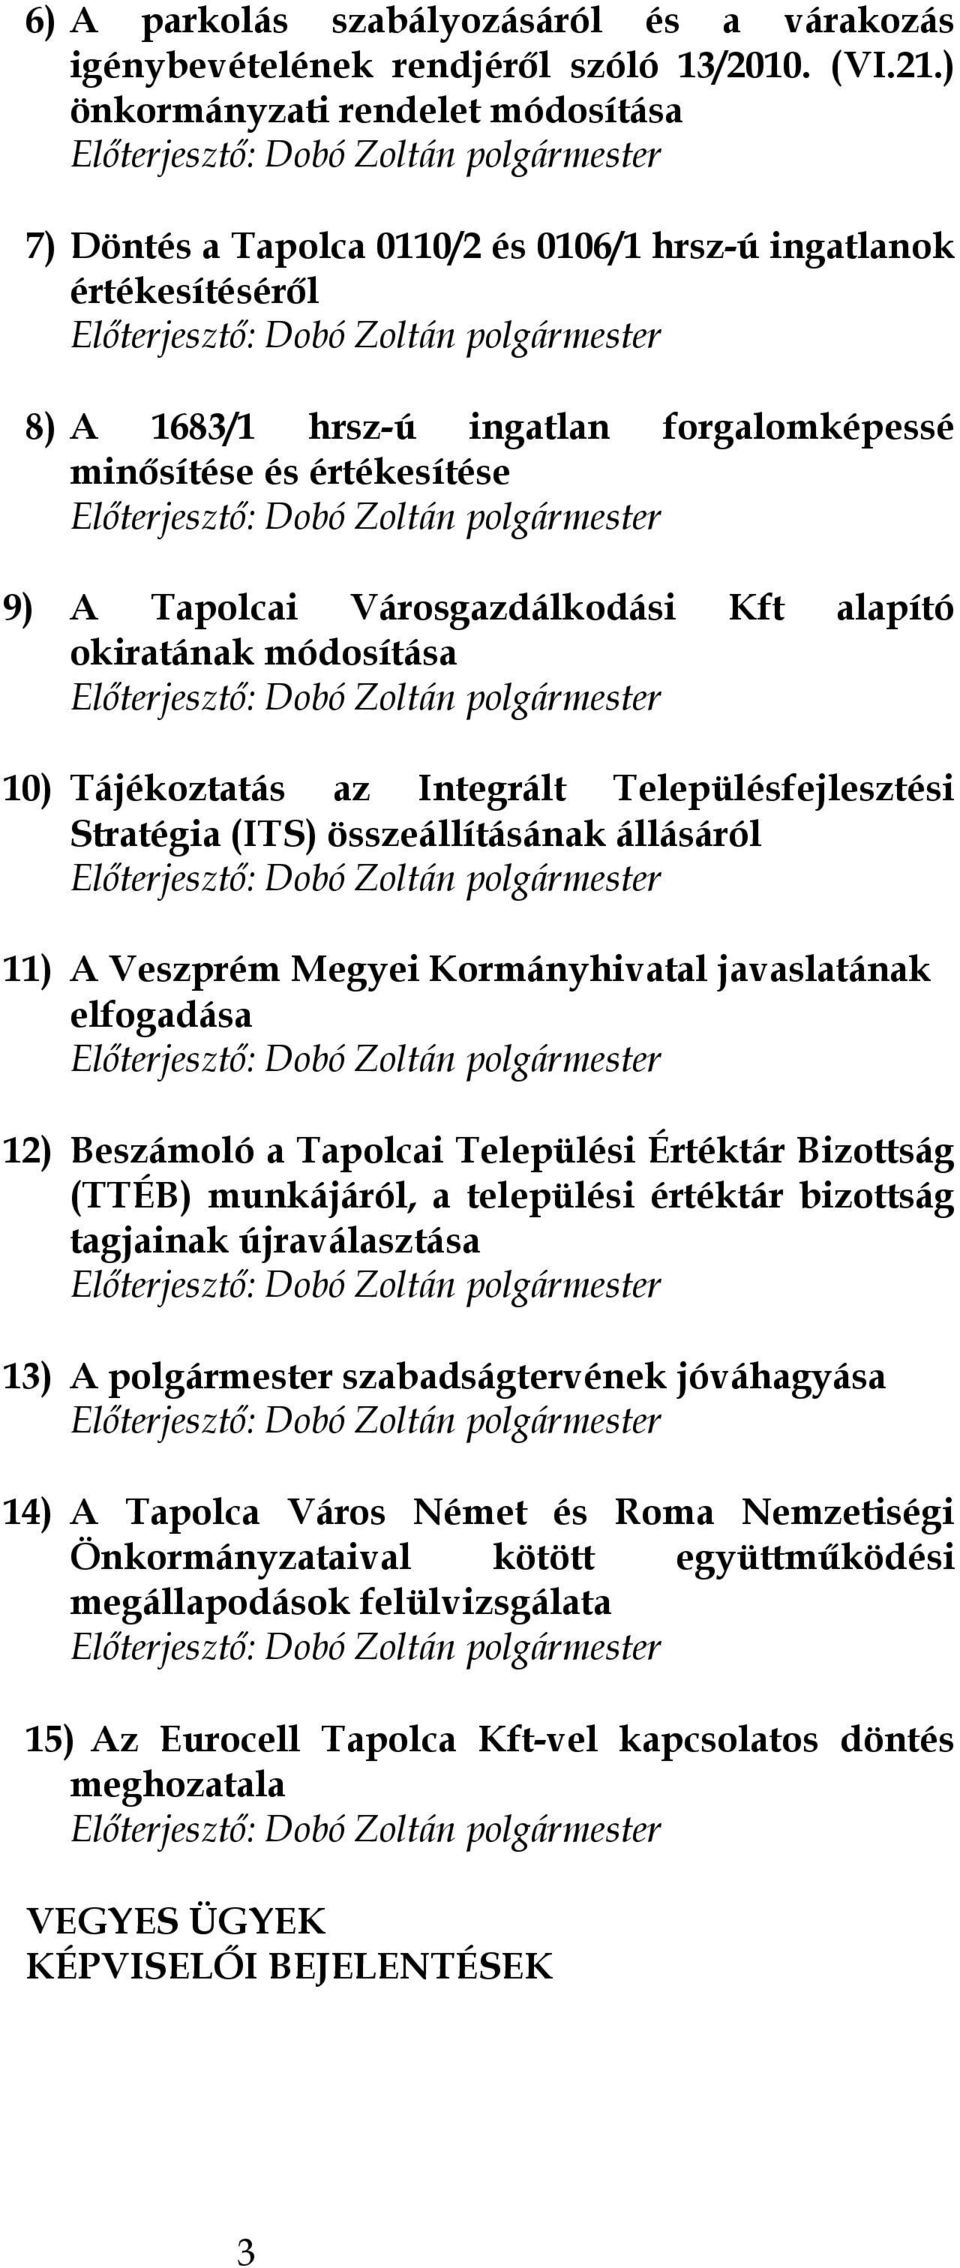 Városgazdálkodási Kft alapító okiratának módosítása 10) Tájékoztatás az Integrált Településfejlesztési Stratégia (ITS) összeállításának állásáról 11) A Veszprém Megyei Kormányhivatal javaslatának